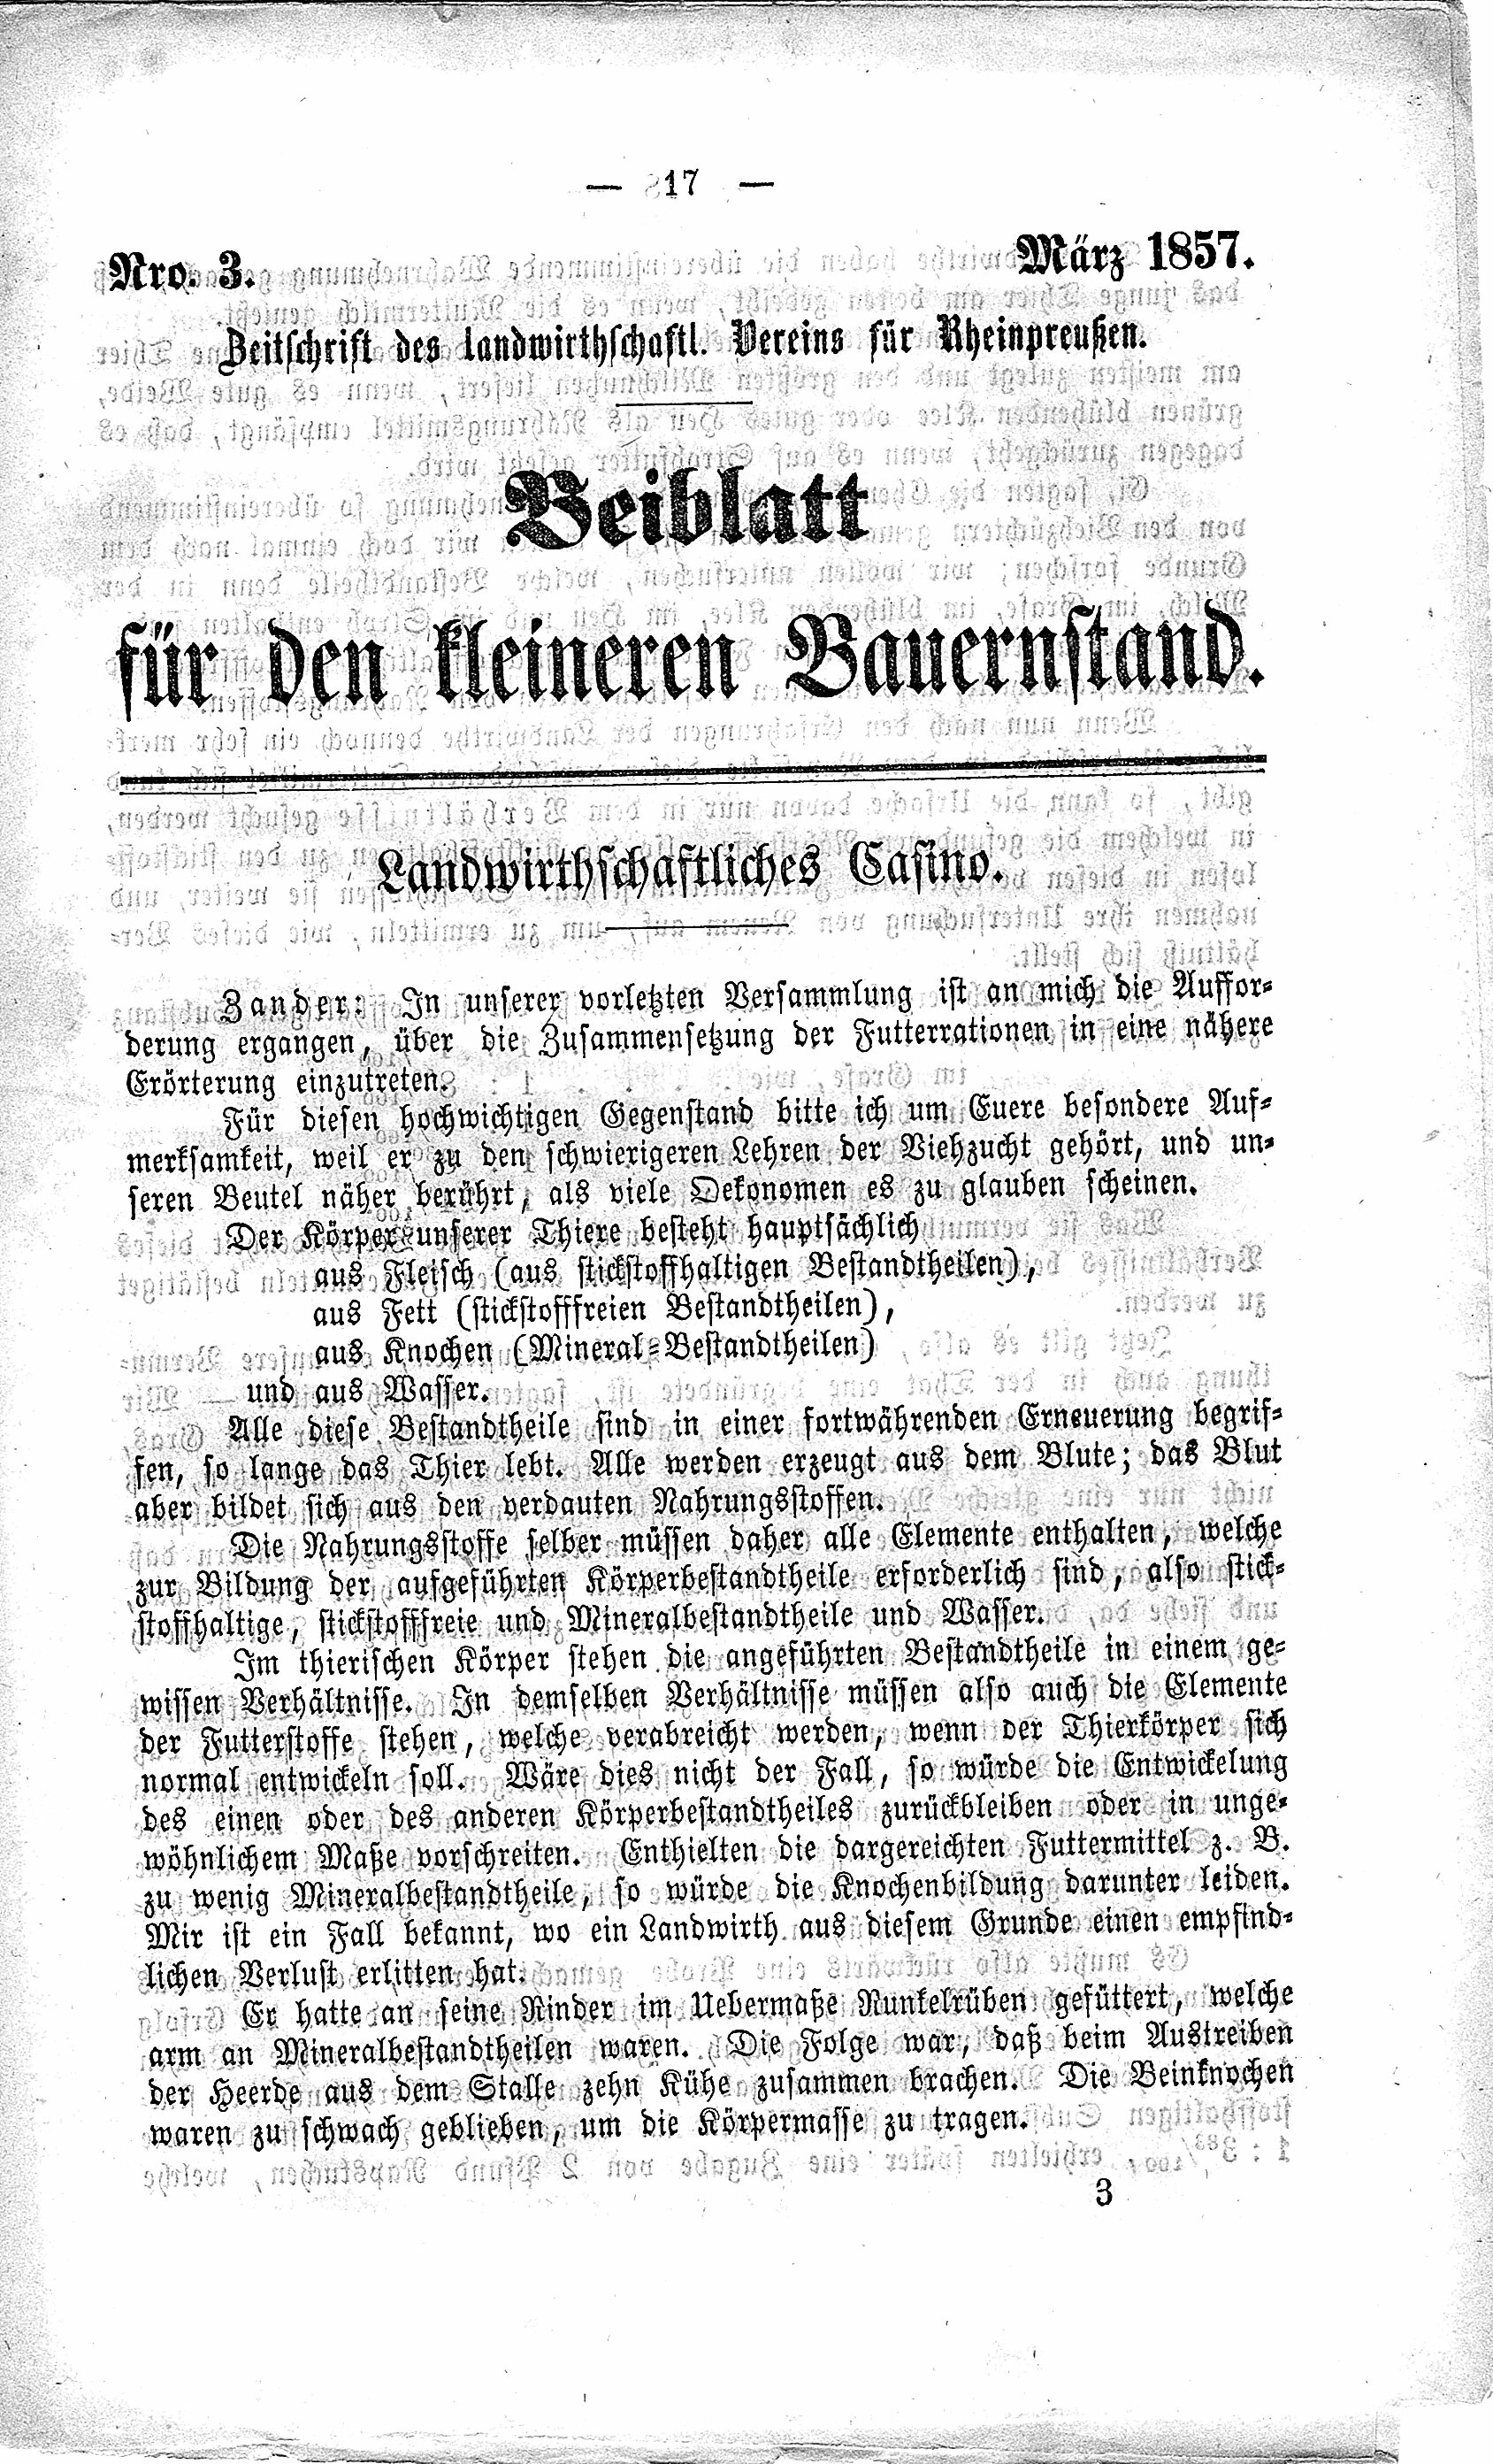 Beiblatt für den kleinen Bauernstand März 1857 (Volkskunde- und Freilichtmuseum Roscheider Hof CC0)